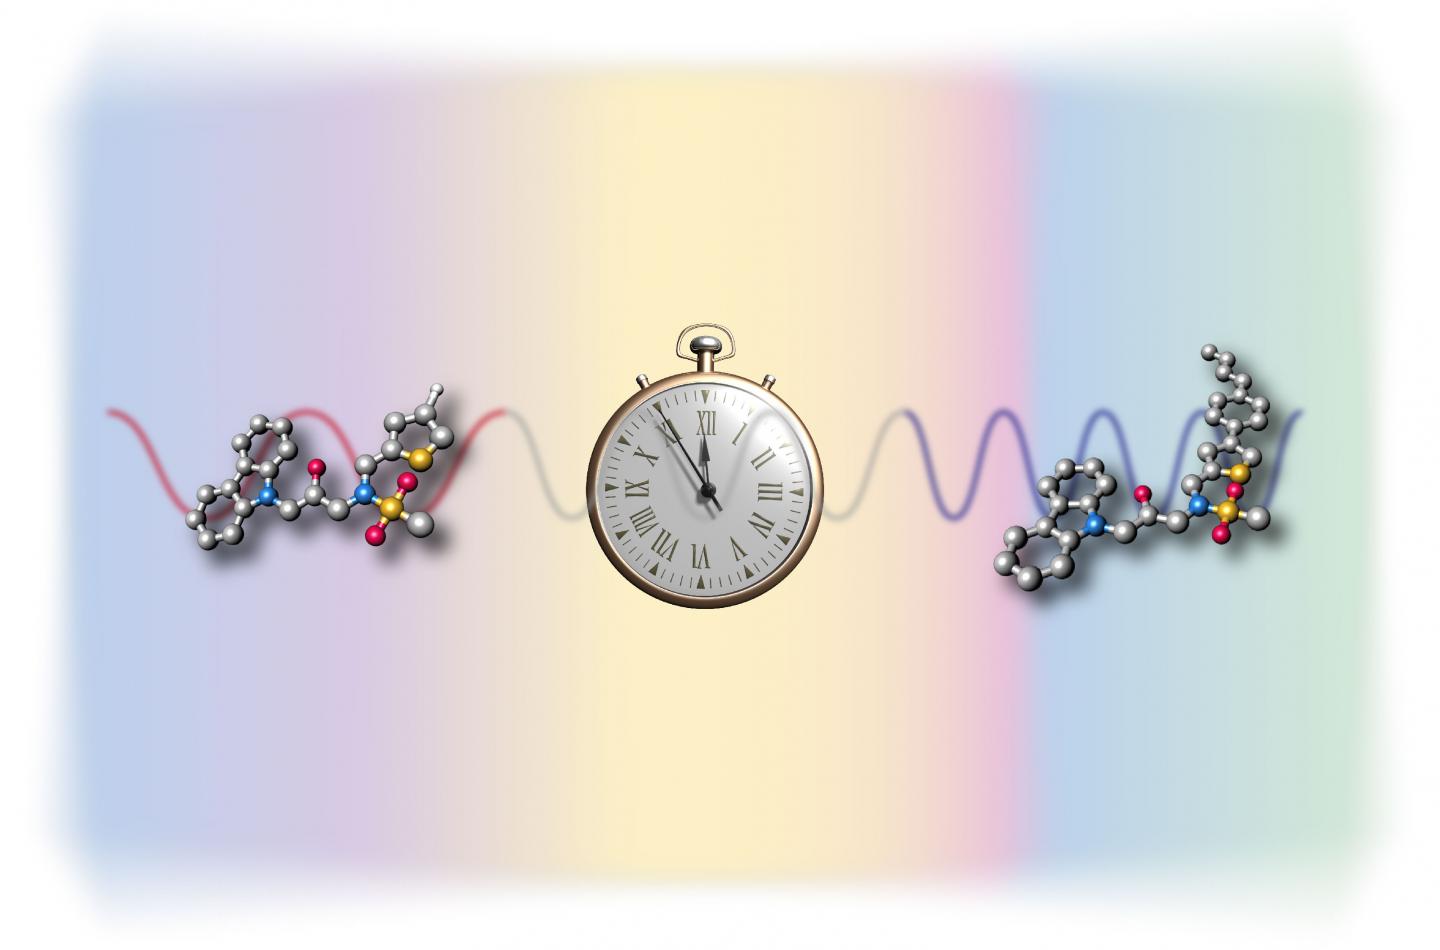 Changes in Clock Rhythm by Molecules